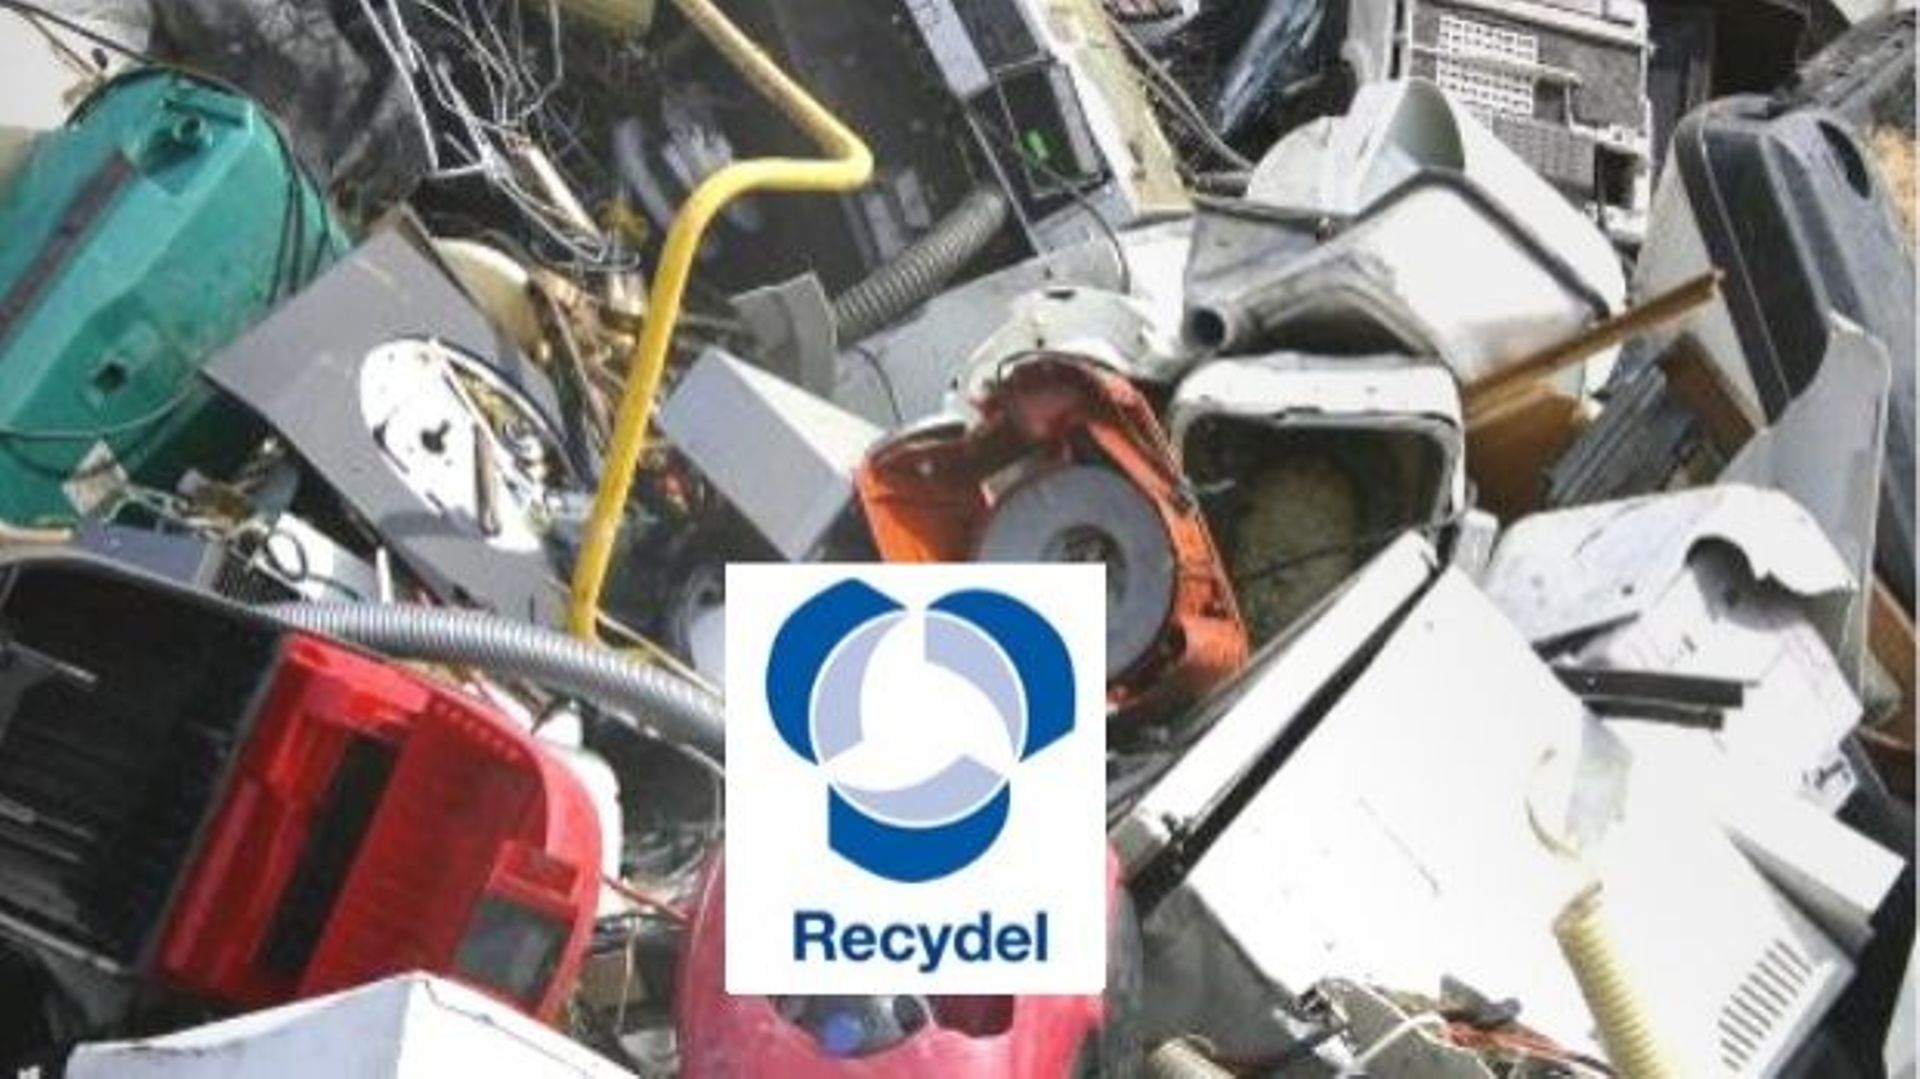 Polémique, à Wandre sur la toxicité du recyclage... et du syndicalisme